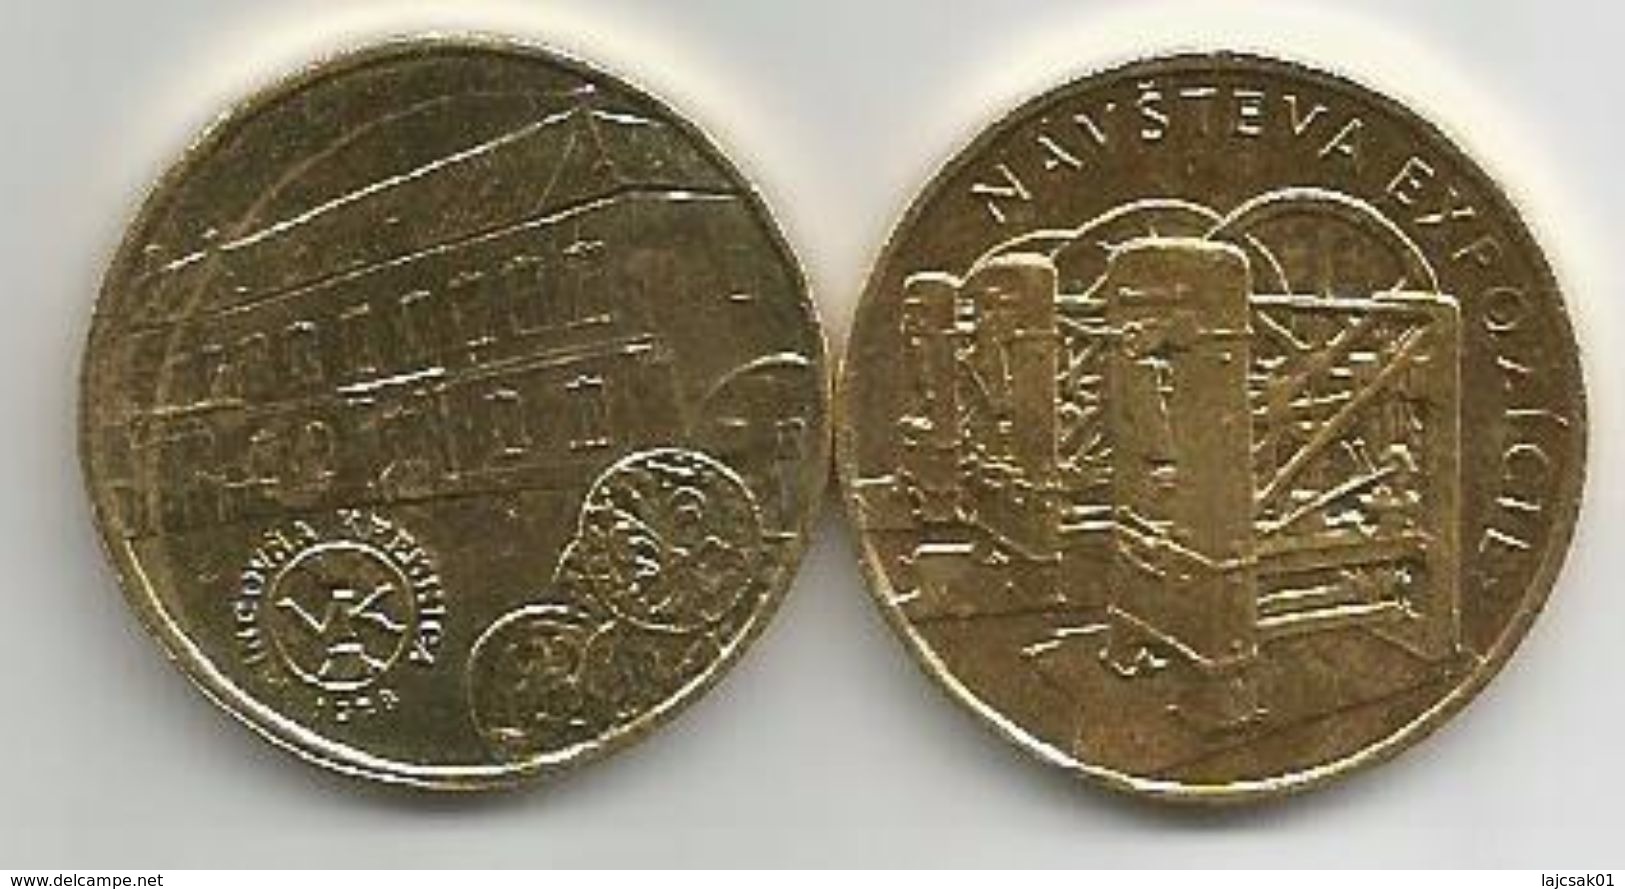 Slovakia Kremnica Mint Token - Slowakei